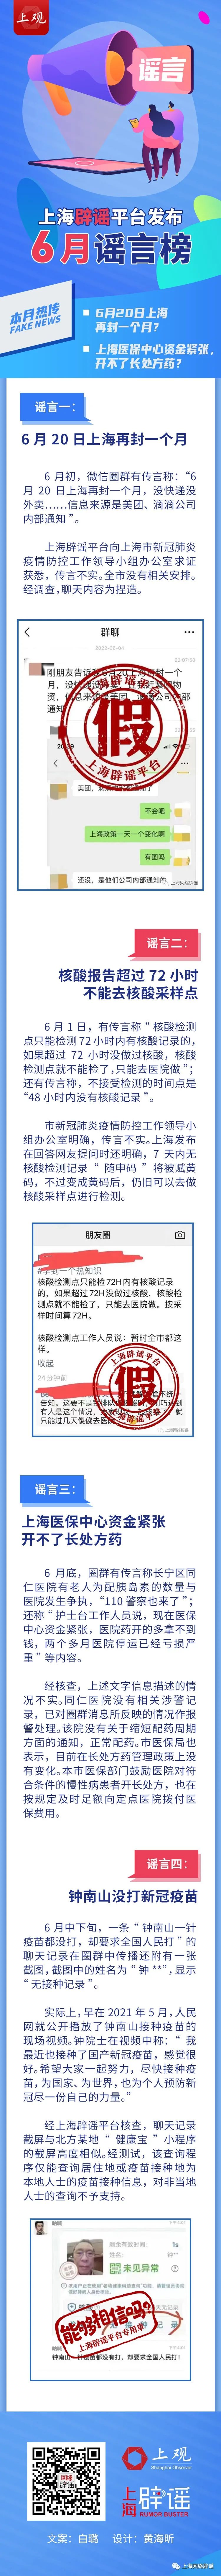 上海辟谣平台发布6月谣言榜